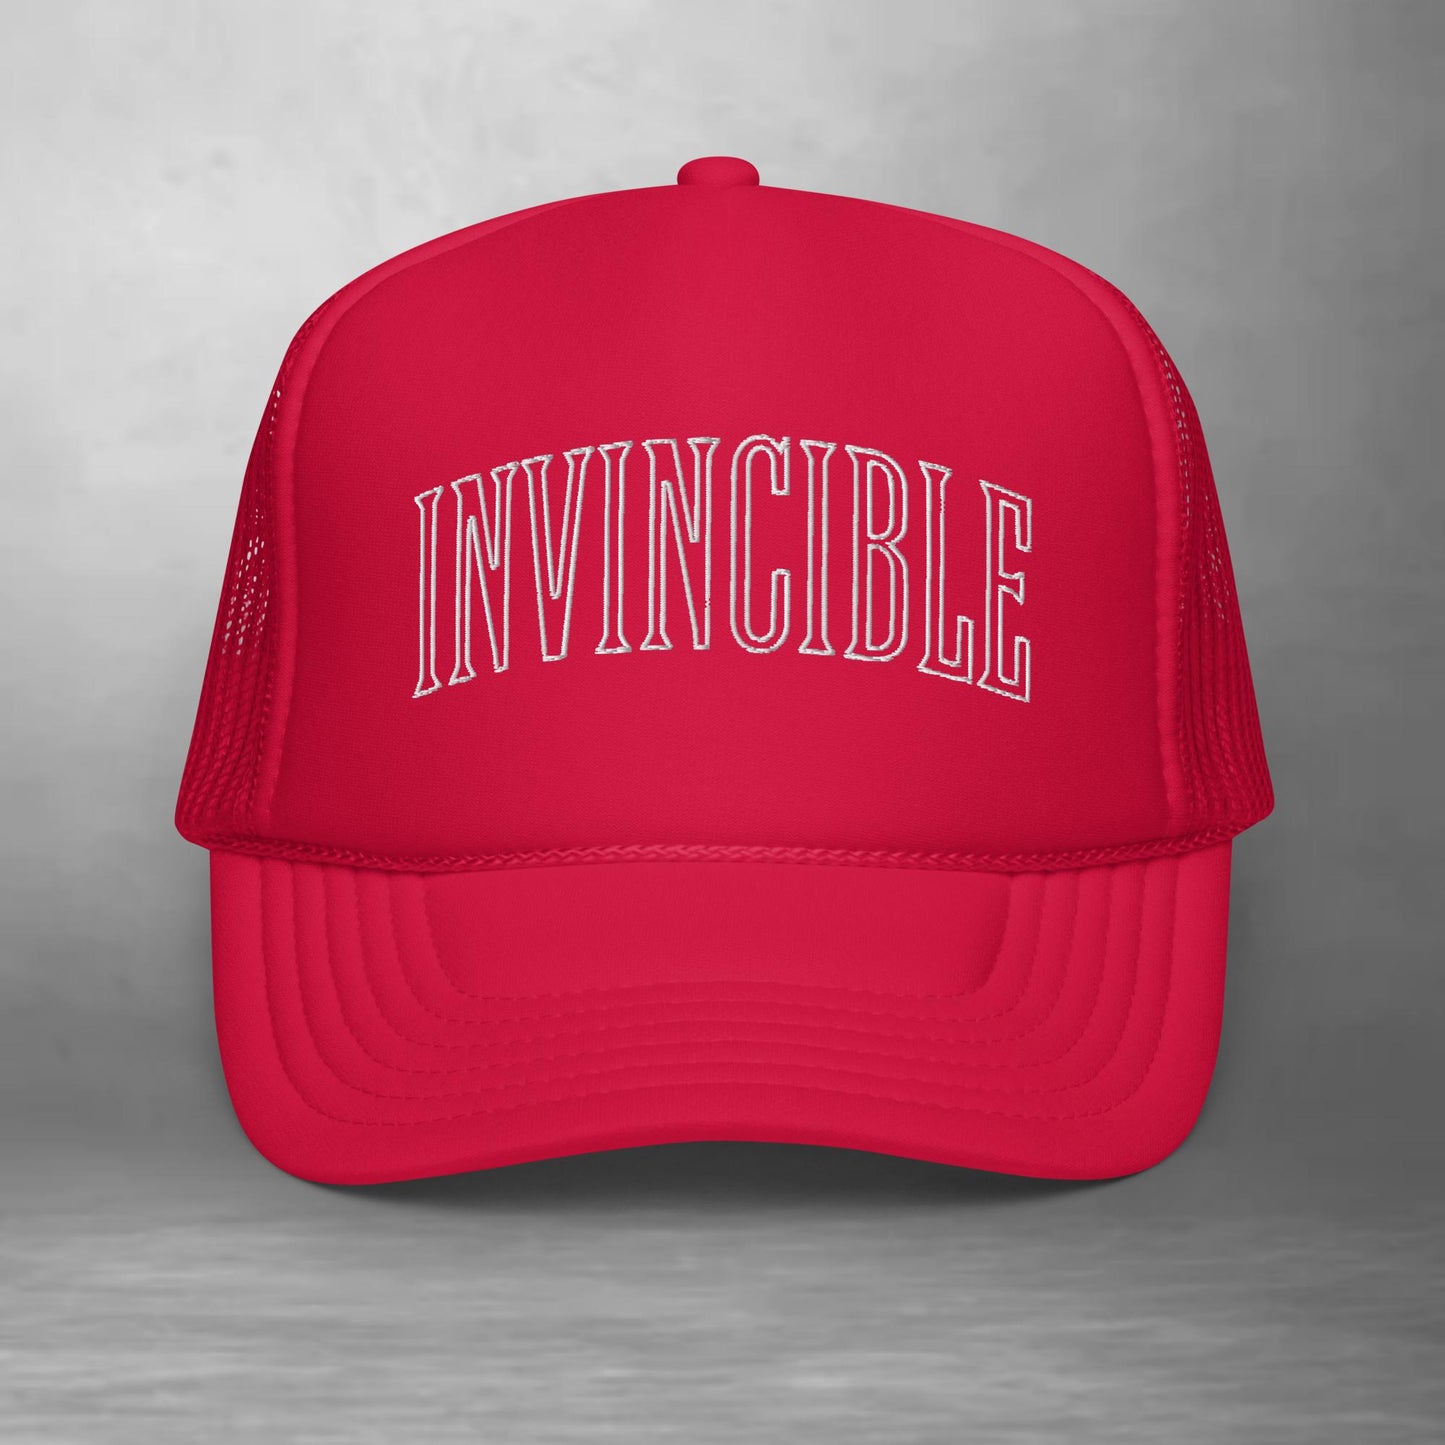 INVINCIBLE Spliff Tees trucker hat